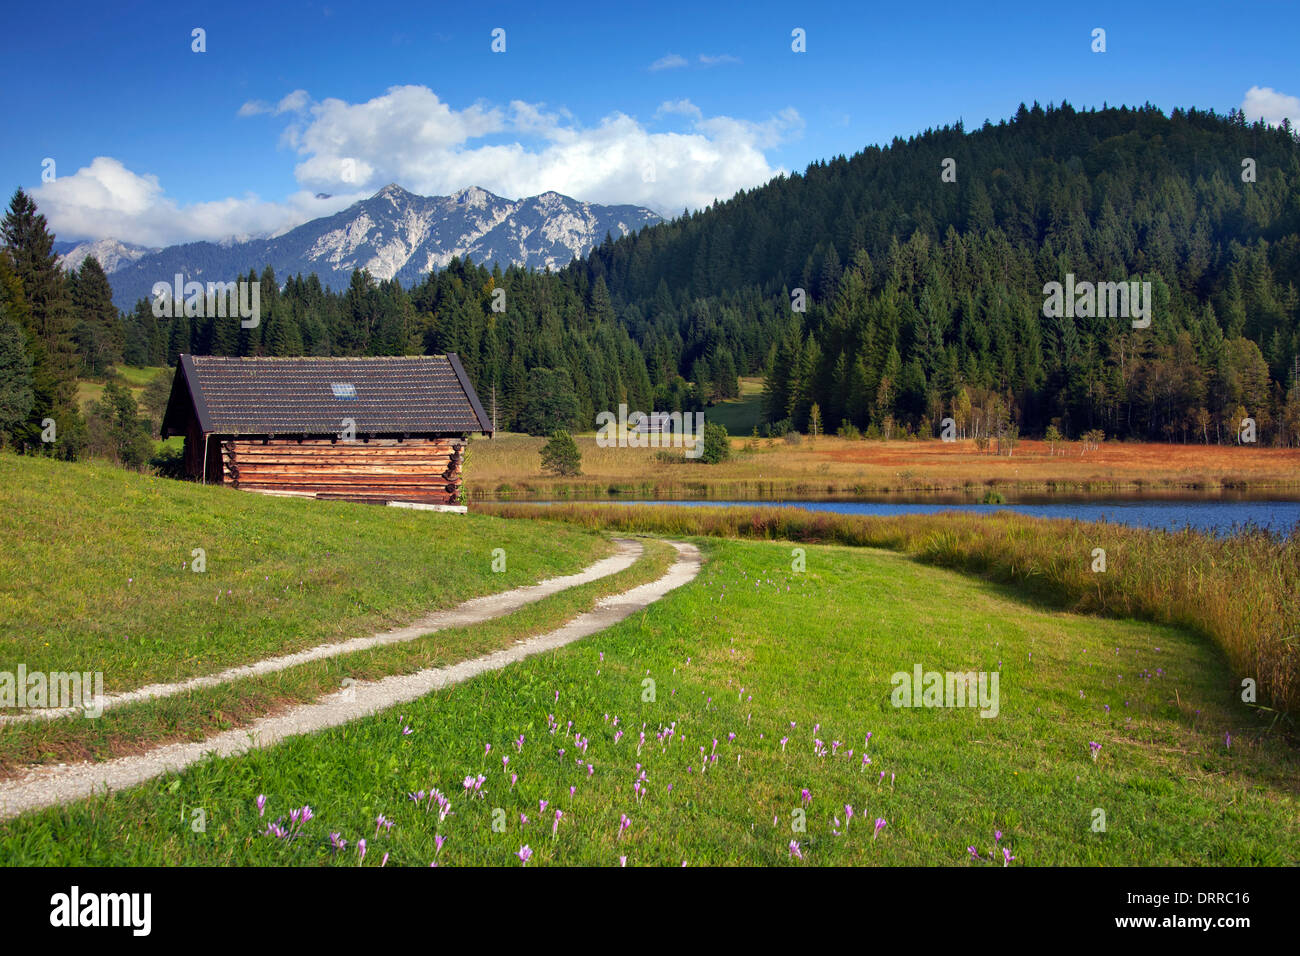 Wooden huts / granaries along lake Gerold / Geroldsee near Mittenwald, Upper Bavaria, Germany Stock Photo